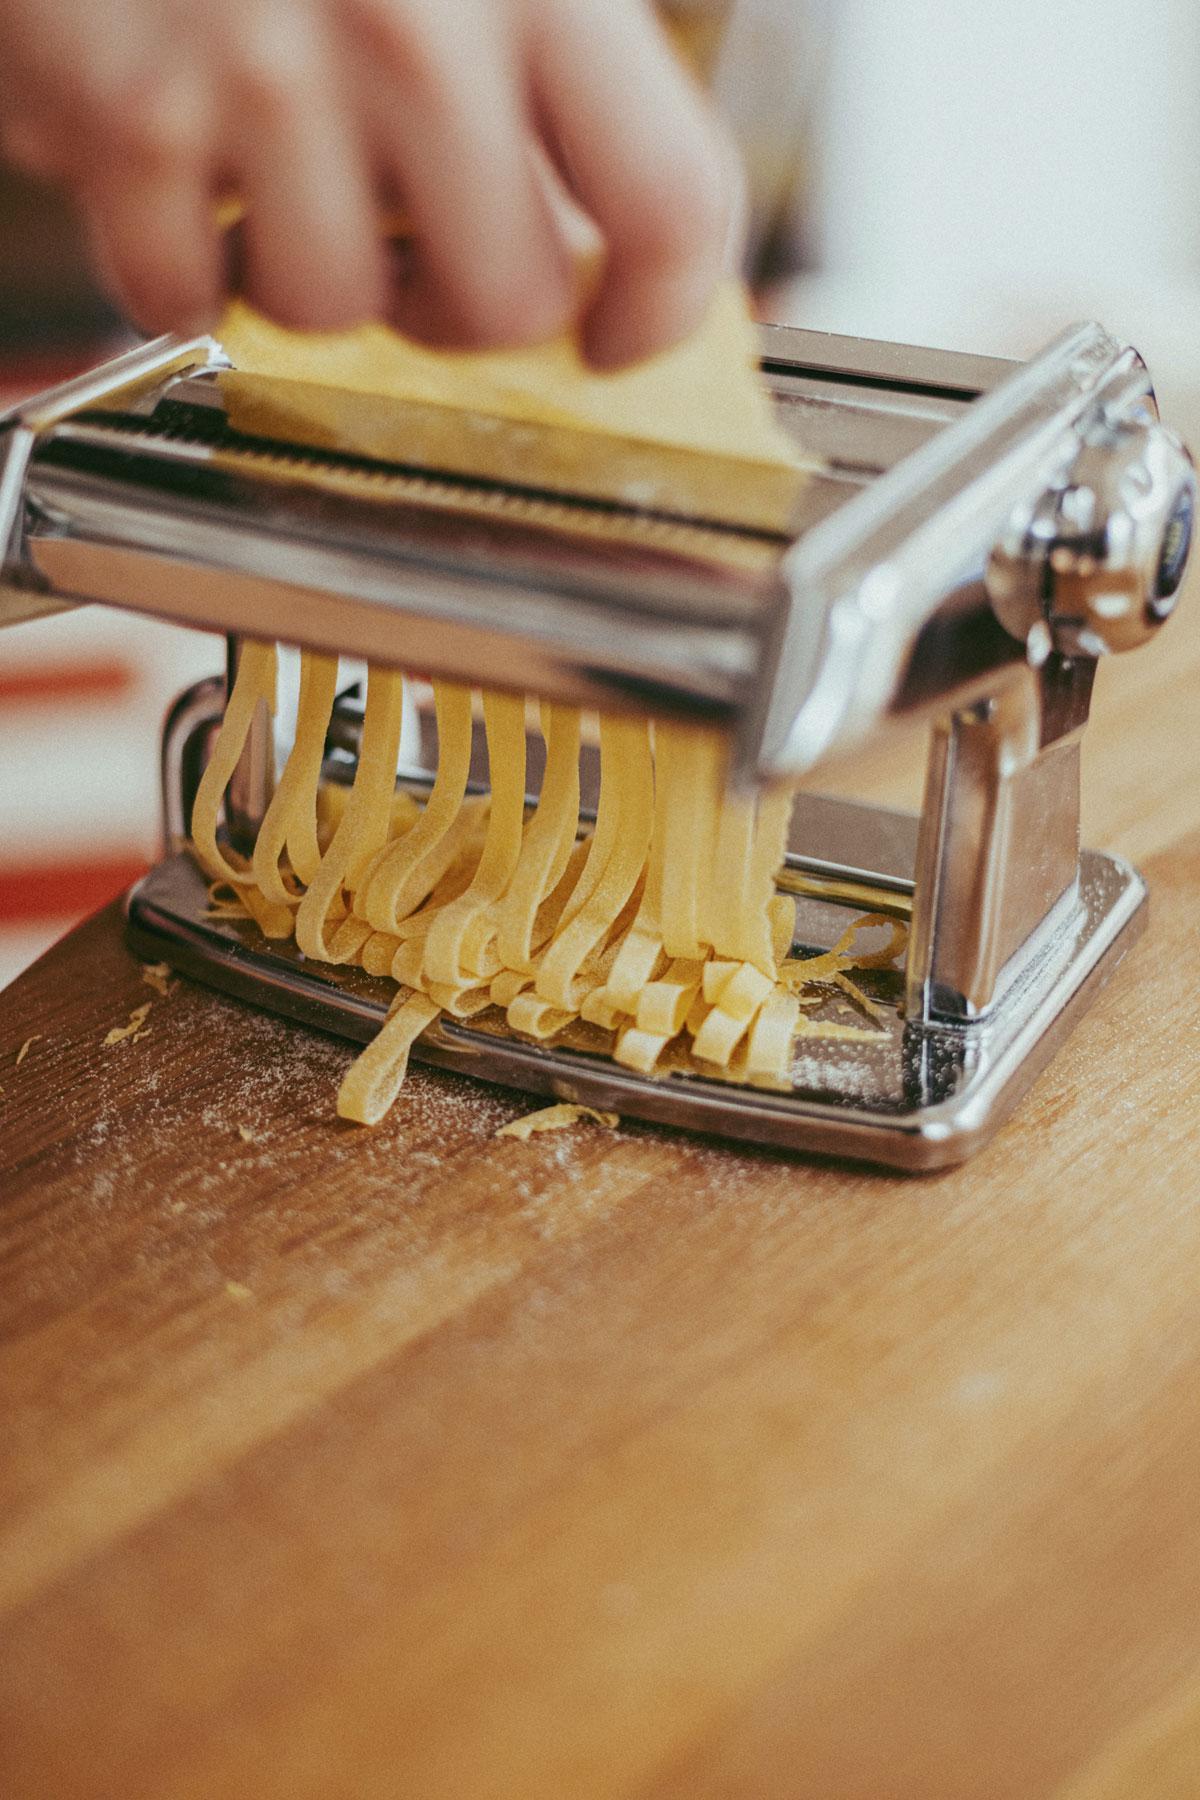 zelf pasta maken